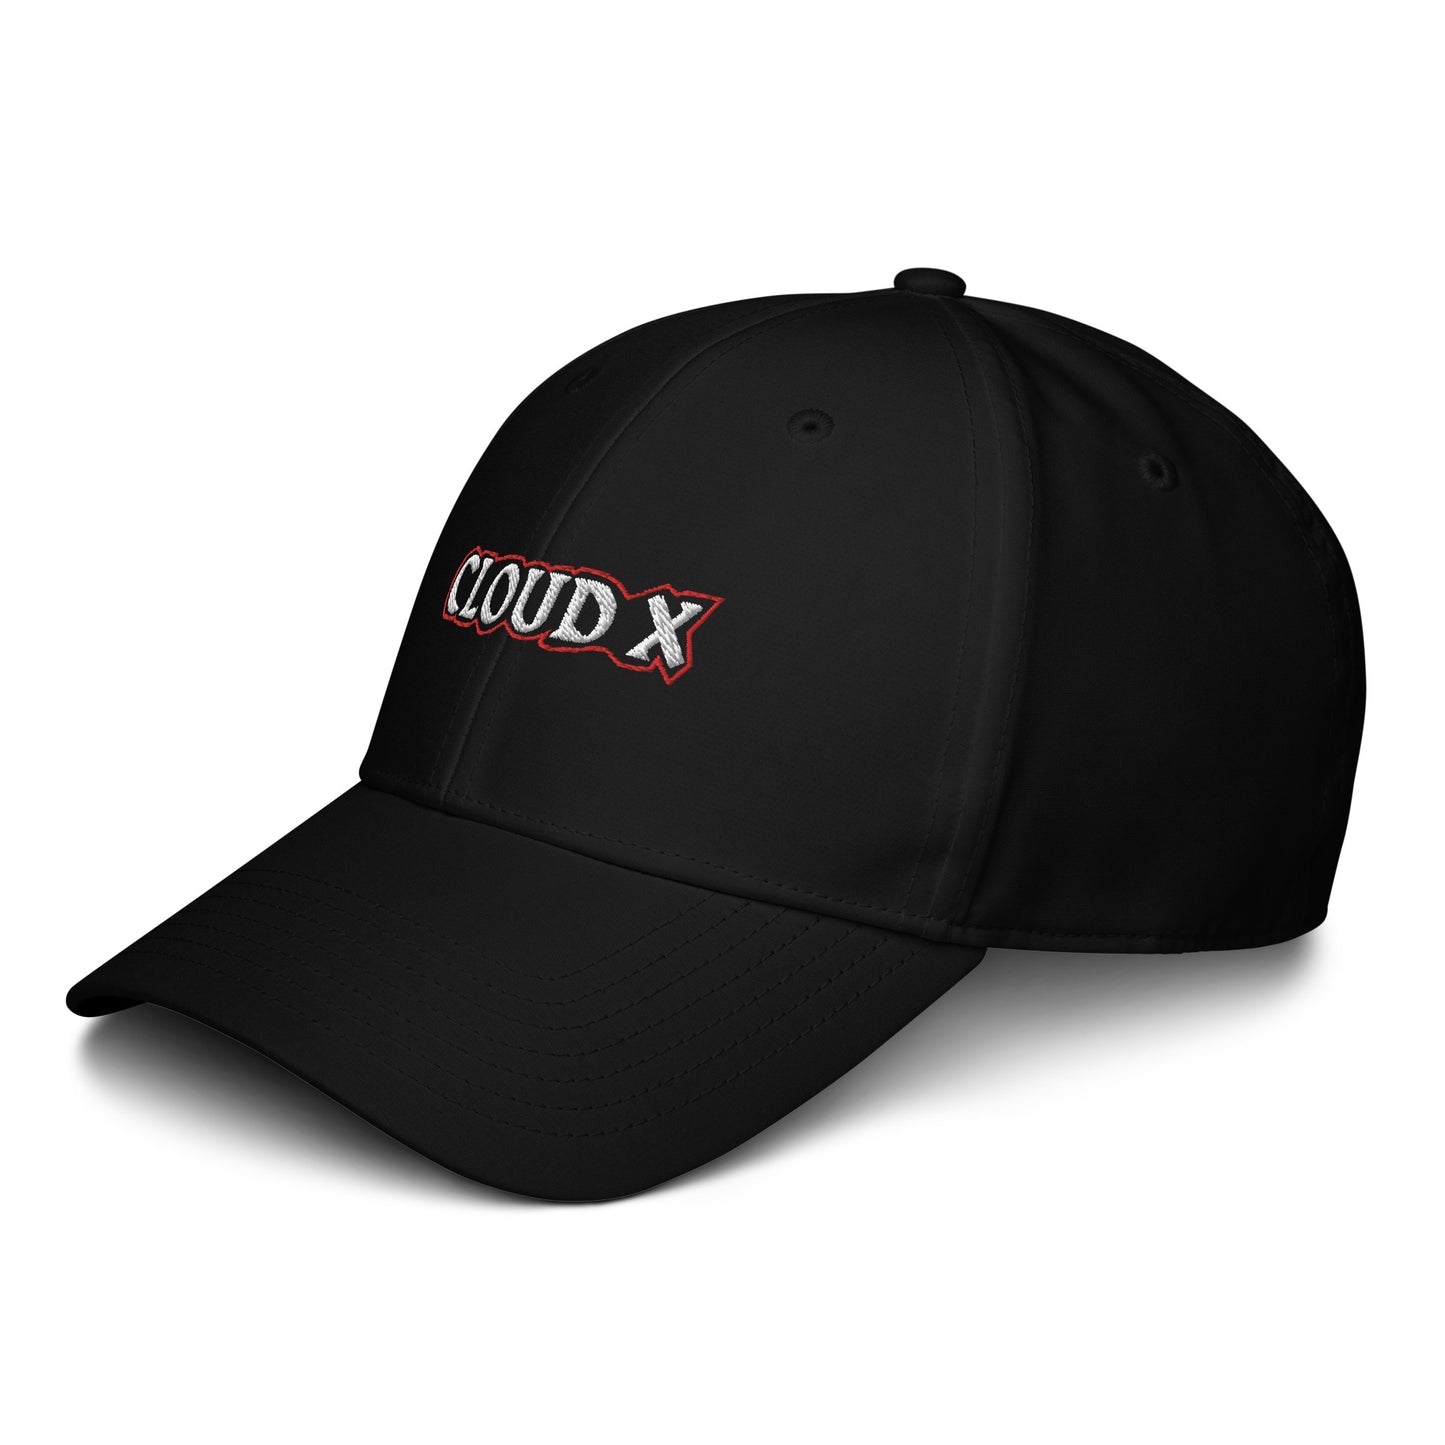 ADIDAS x CLOUD X BASEBALL CAP